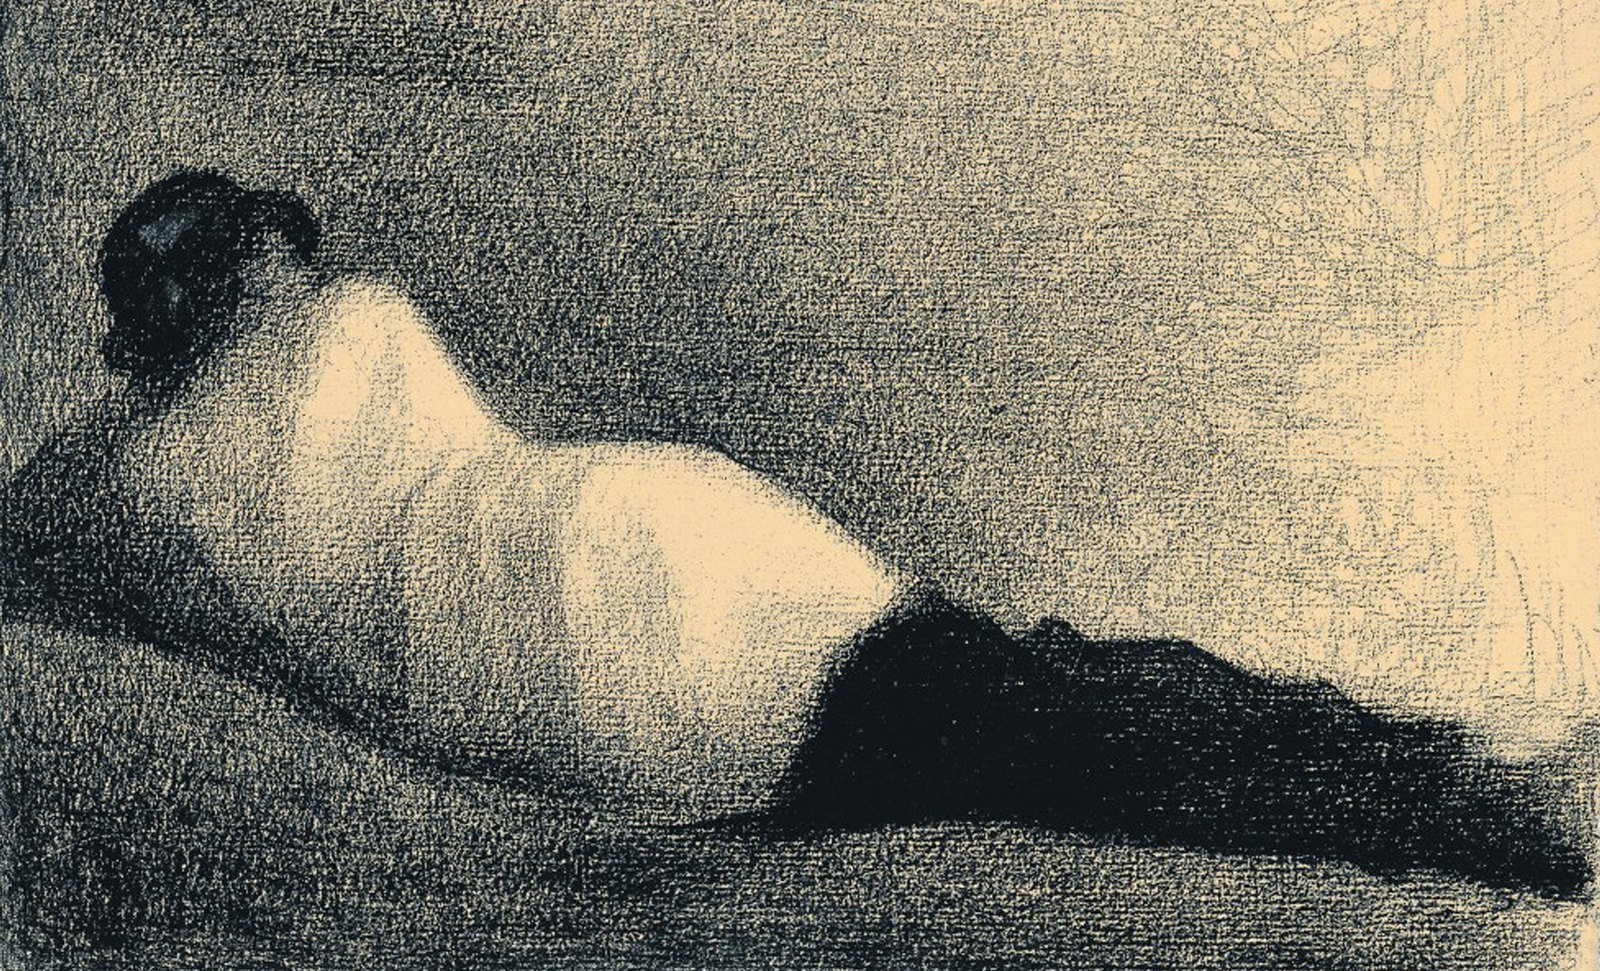 Georges Pierre Seurat